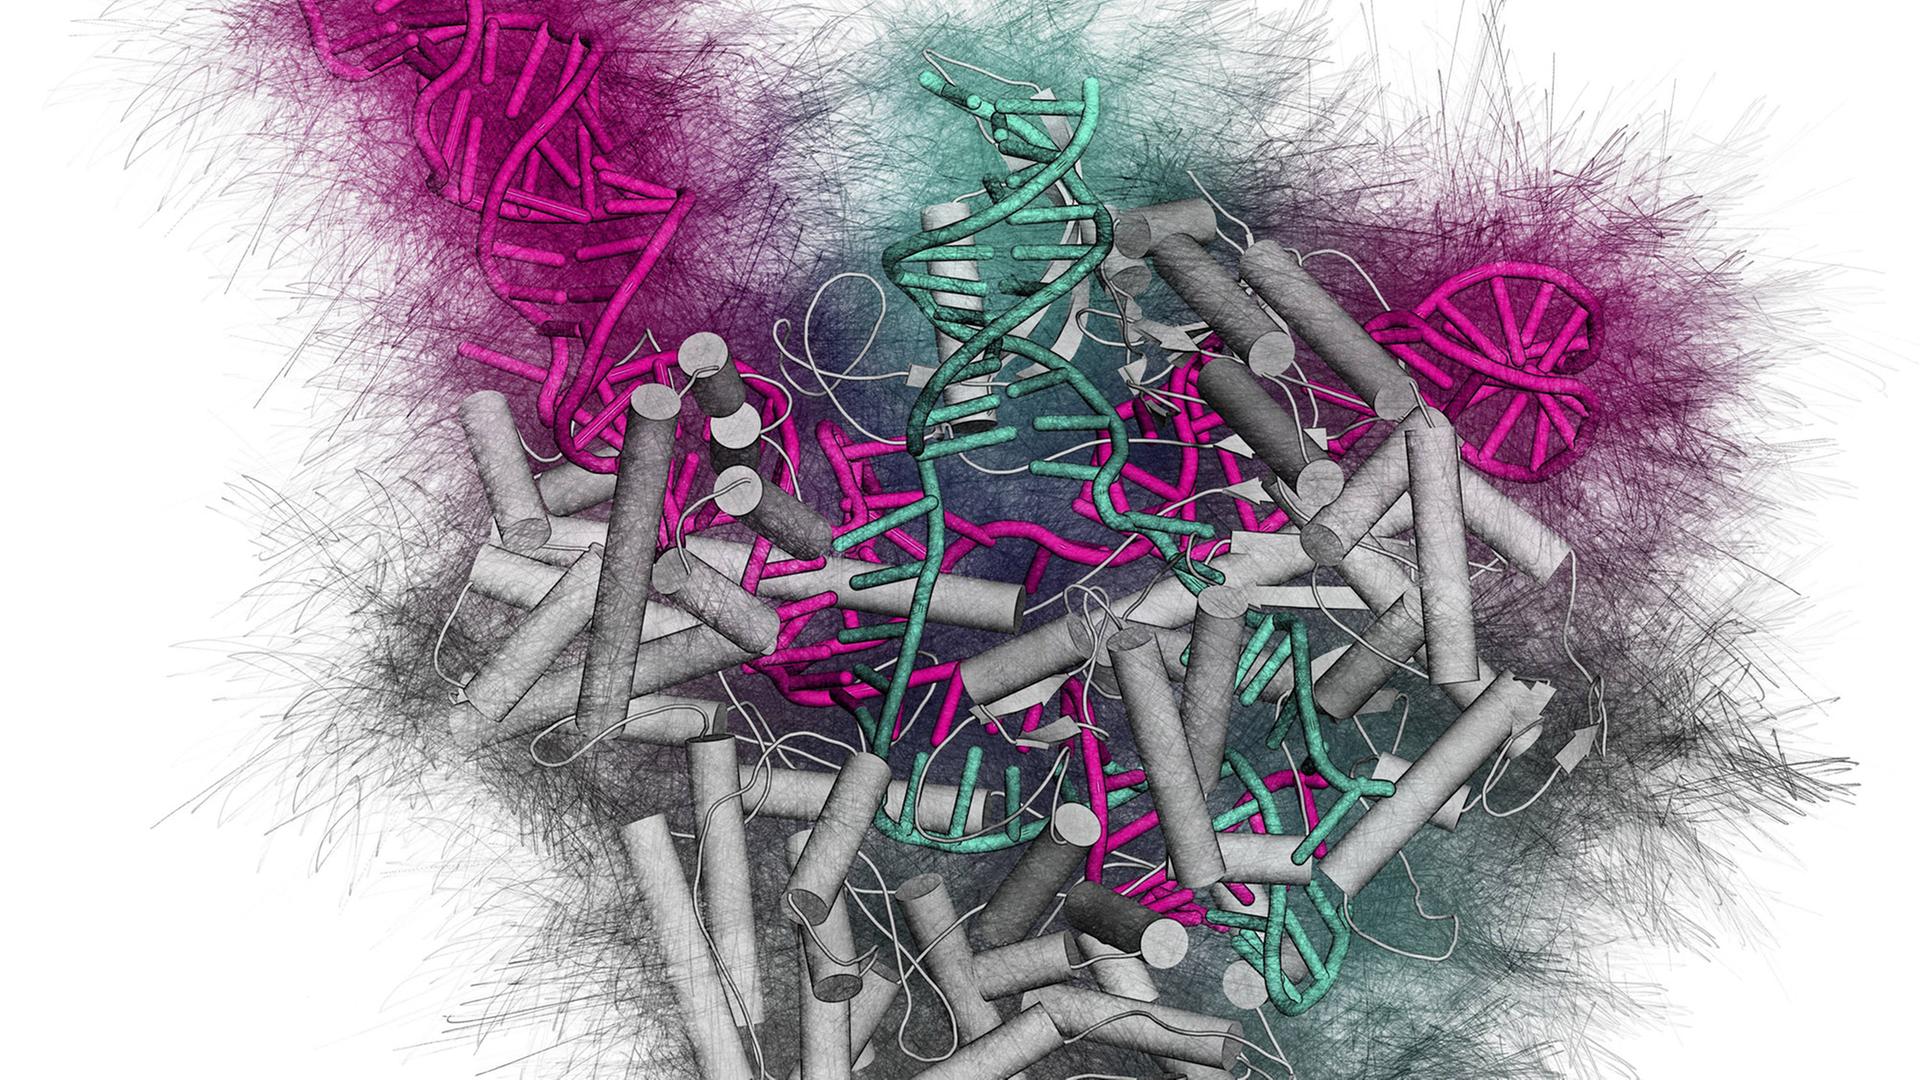 Ein CRISPR-CAS9 Genscheren-Komplex von Streptococcus pyogenes. Das Cas9 Nuklease Protein (grau) nutzt eine RNA-Sequenz (pink), um DNA (grün) zu schneiden.